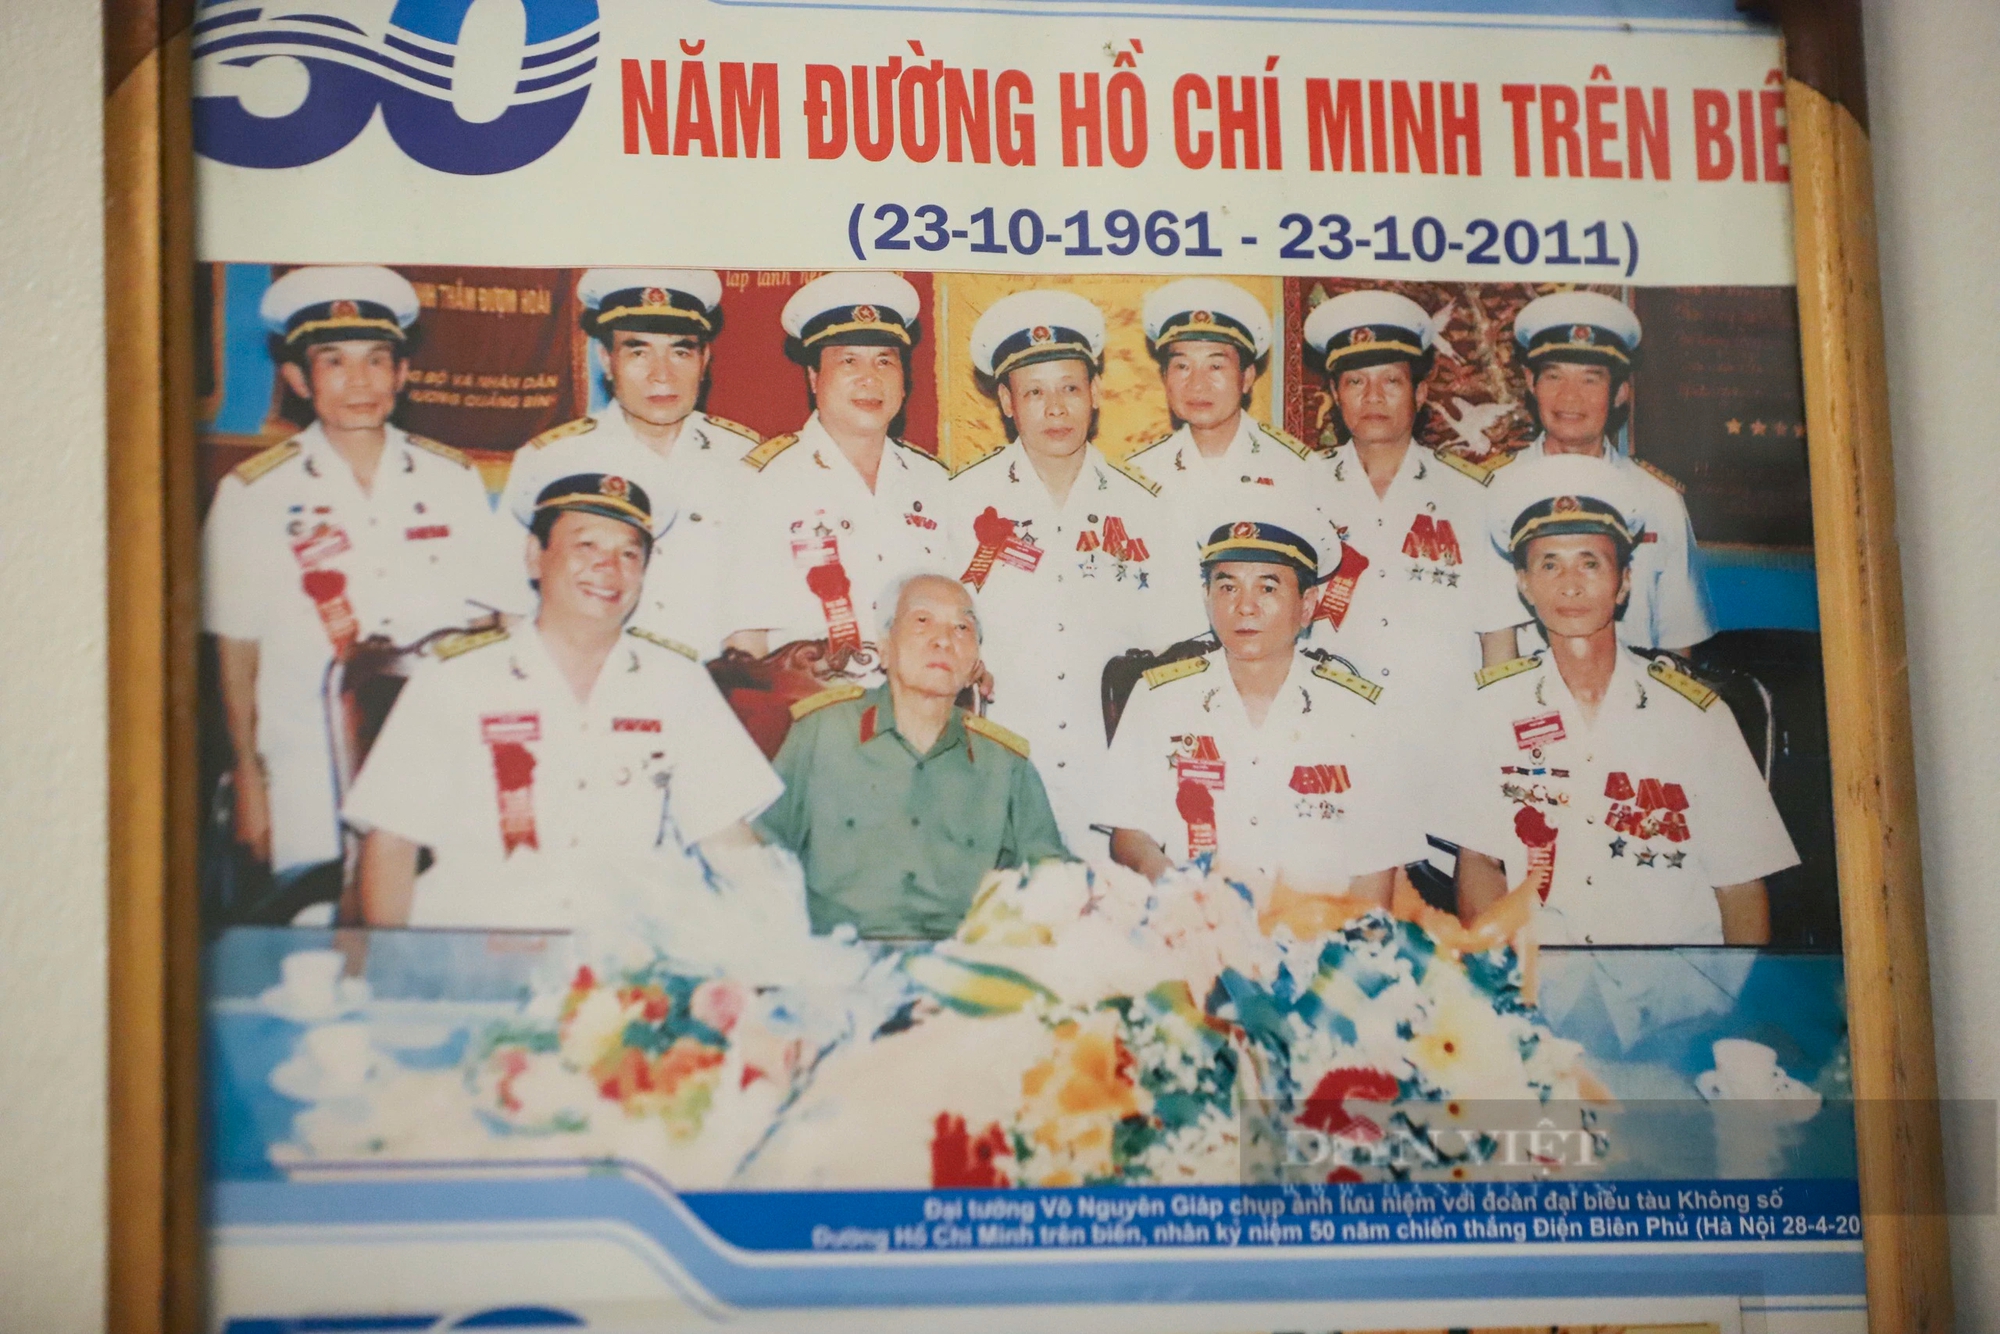 Gặp người lính, người thầy vượt đường Hồ Chí Minh trên biển bằng 